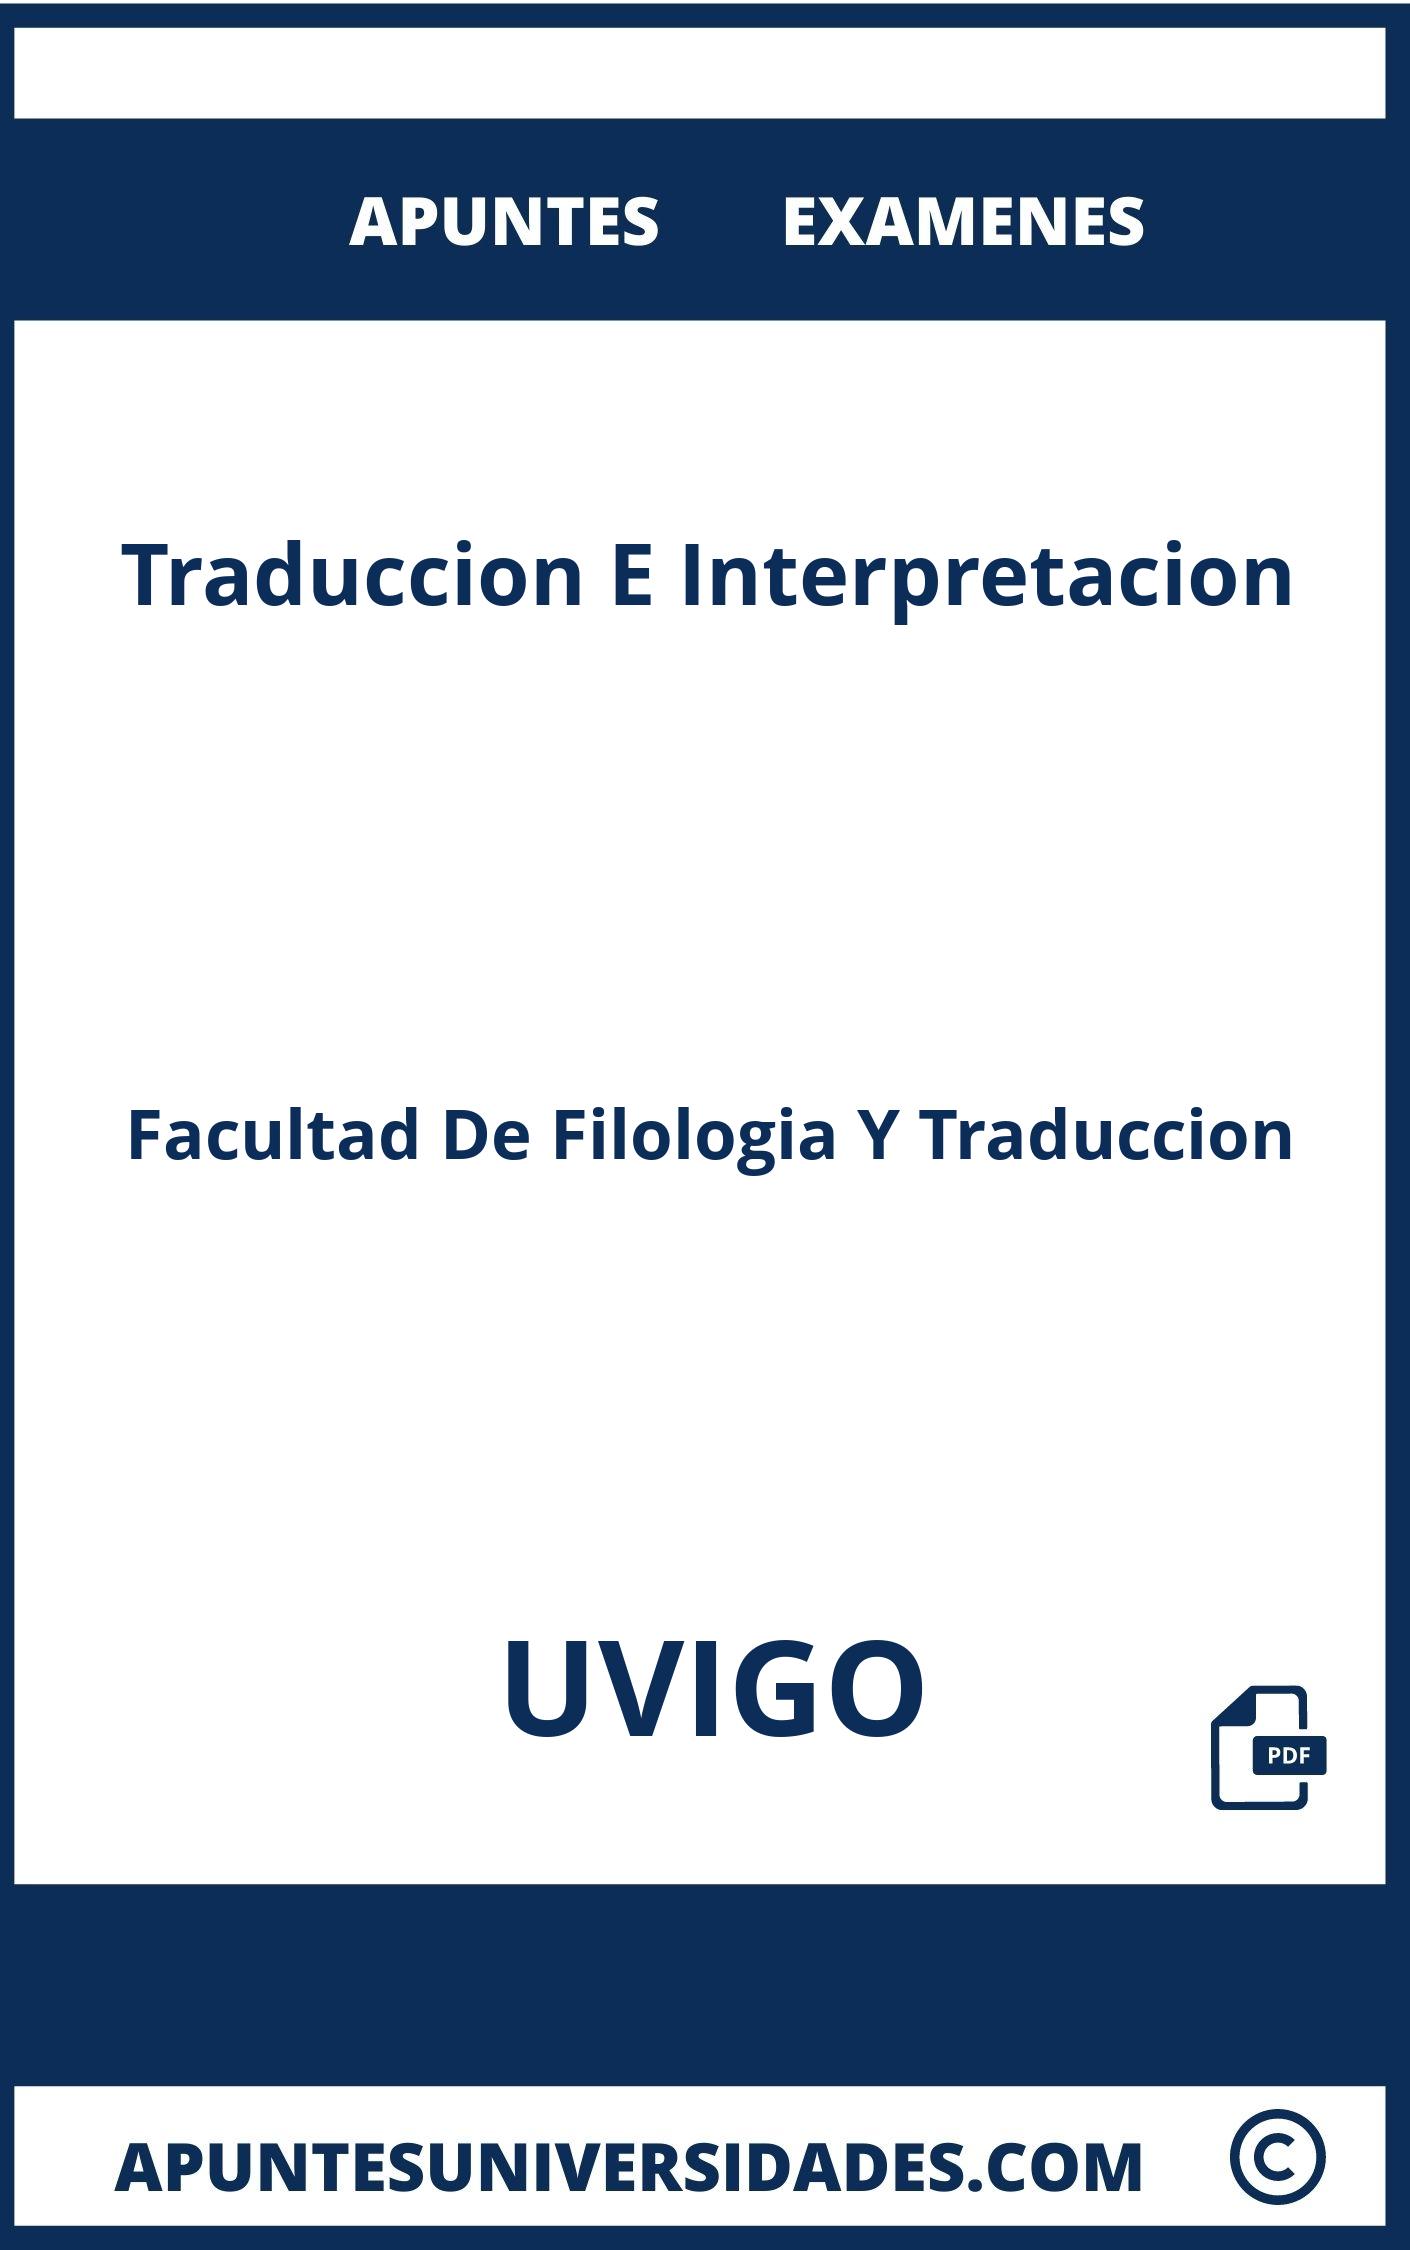 Apuntes y Examenes Traduccion E Interpretacion UVIGO